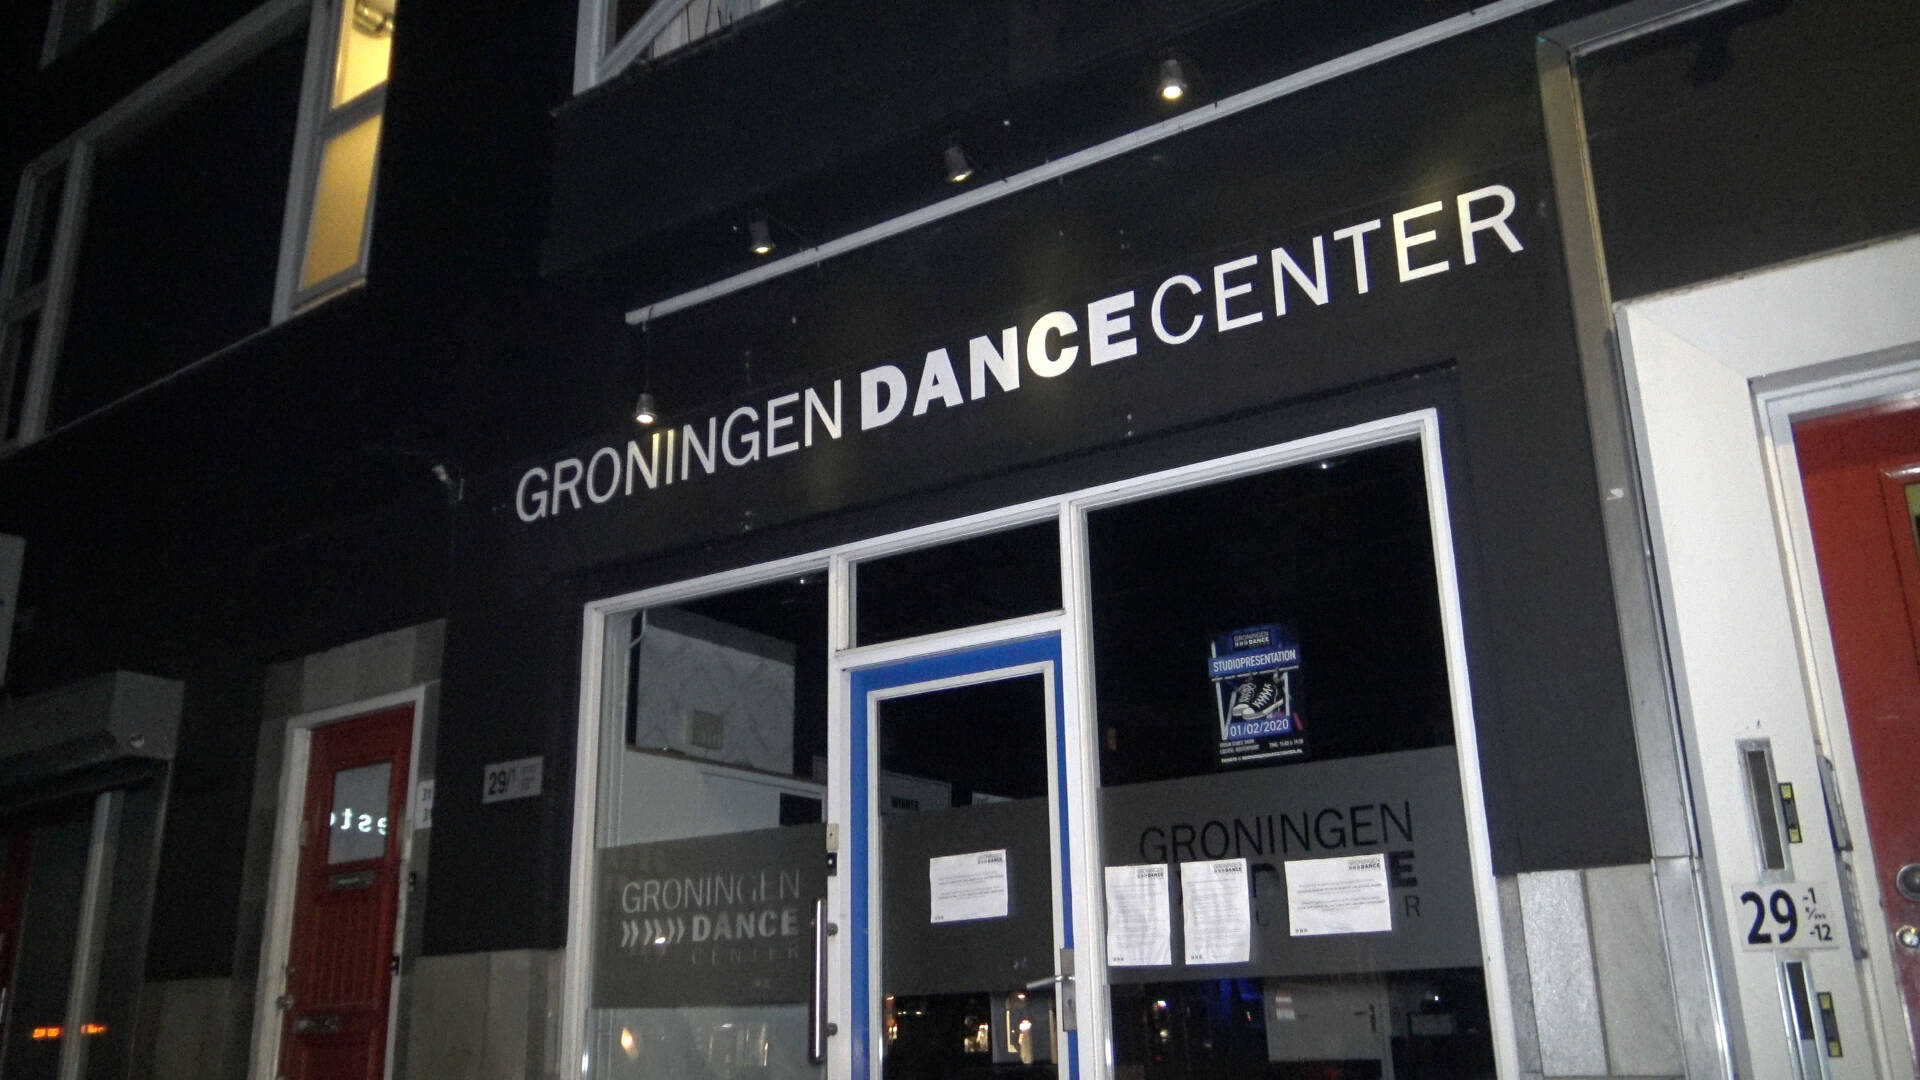 صاحب مدرسة للرقص في Groningen مشتبه بأنه يسيئ معاملة القاصرات